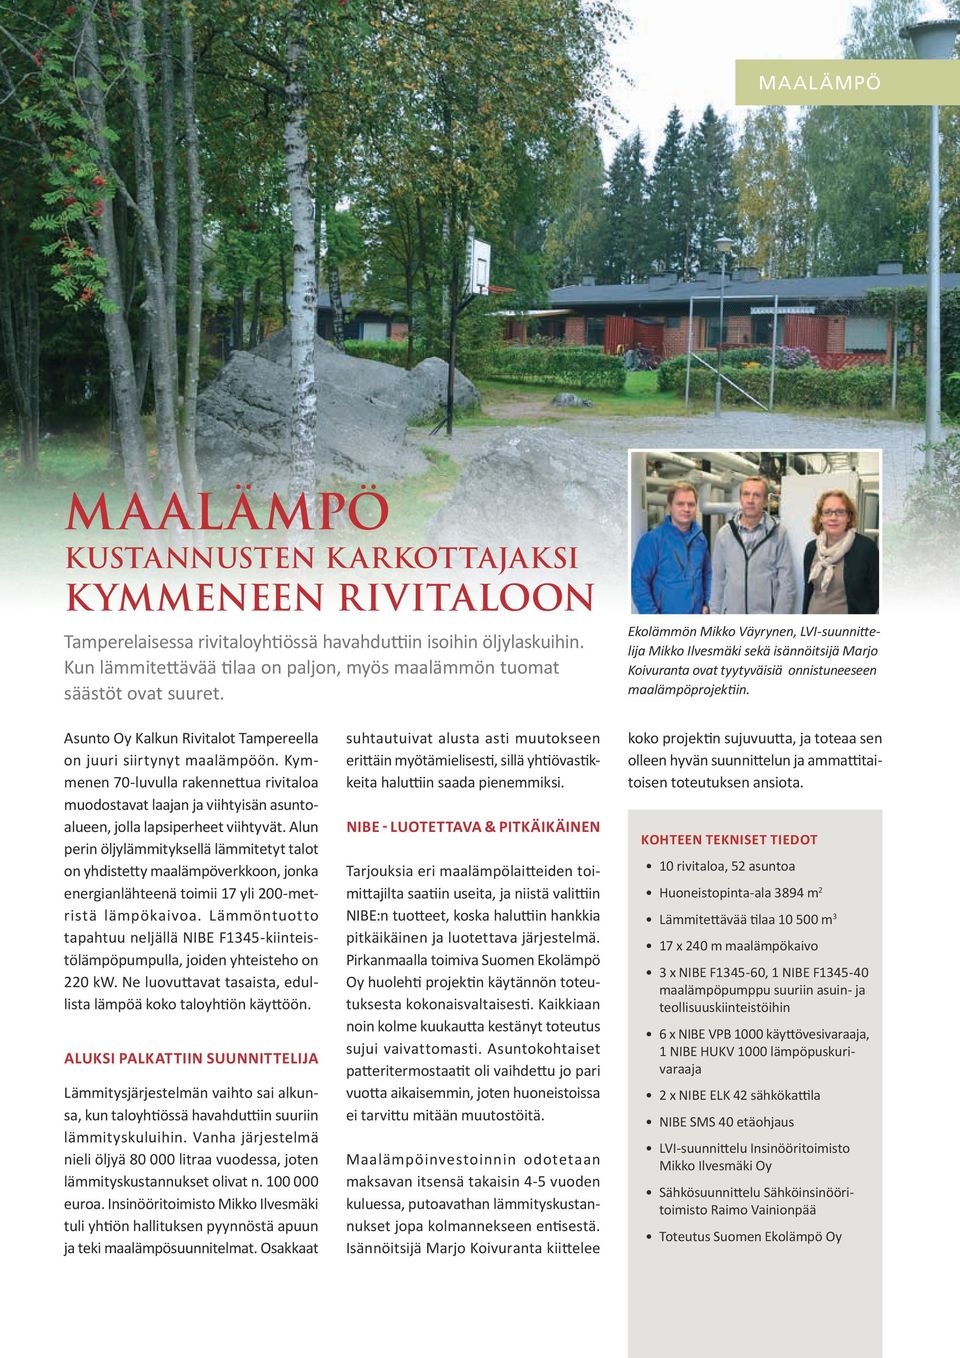 Ekolämmön Mikko Väyrynen, LVI-suunnittelija Mikko Ilvesmäki sekä isännöitsijä Marjo Koivuranta ovat tyytyväisiä onnistuneeseen maalämpöprojektiin.